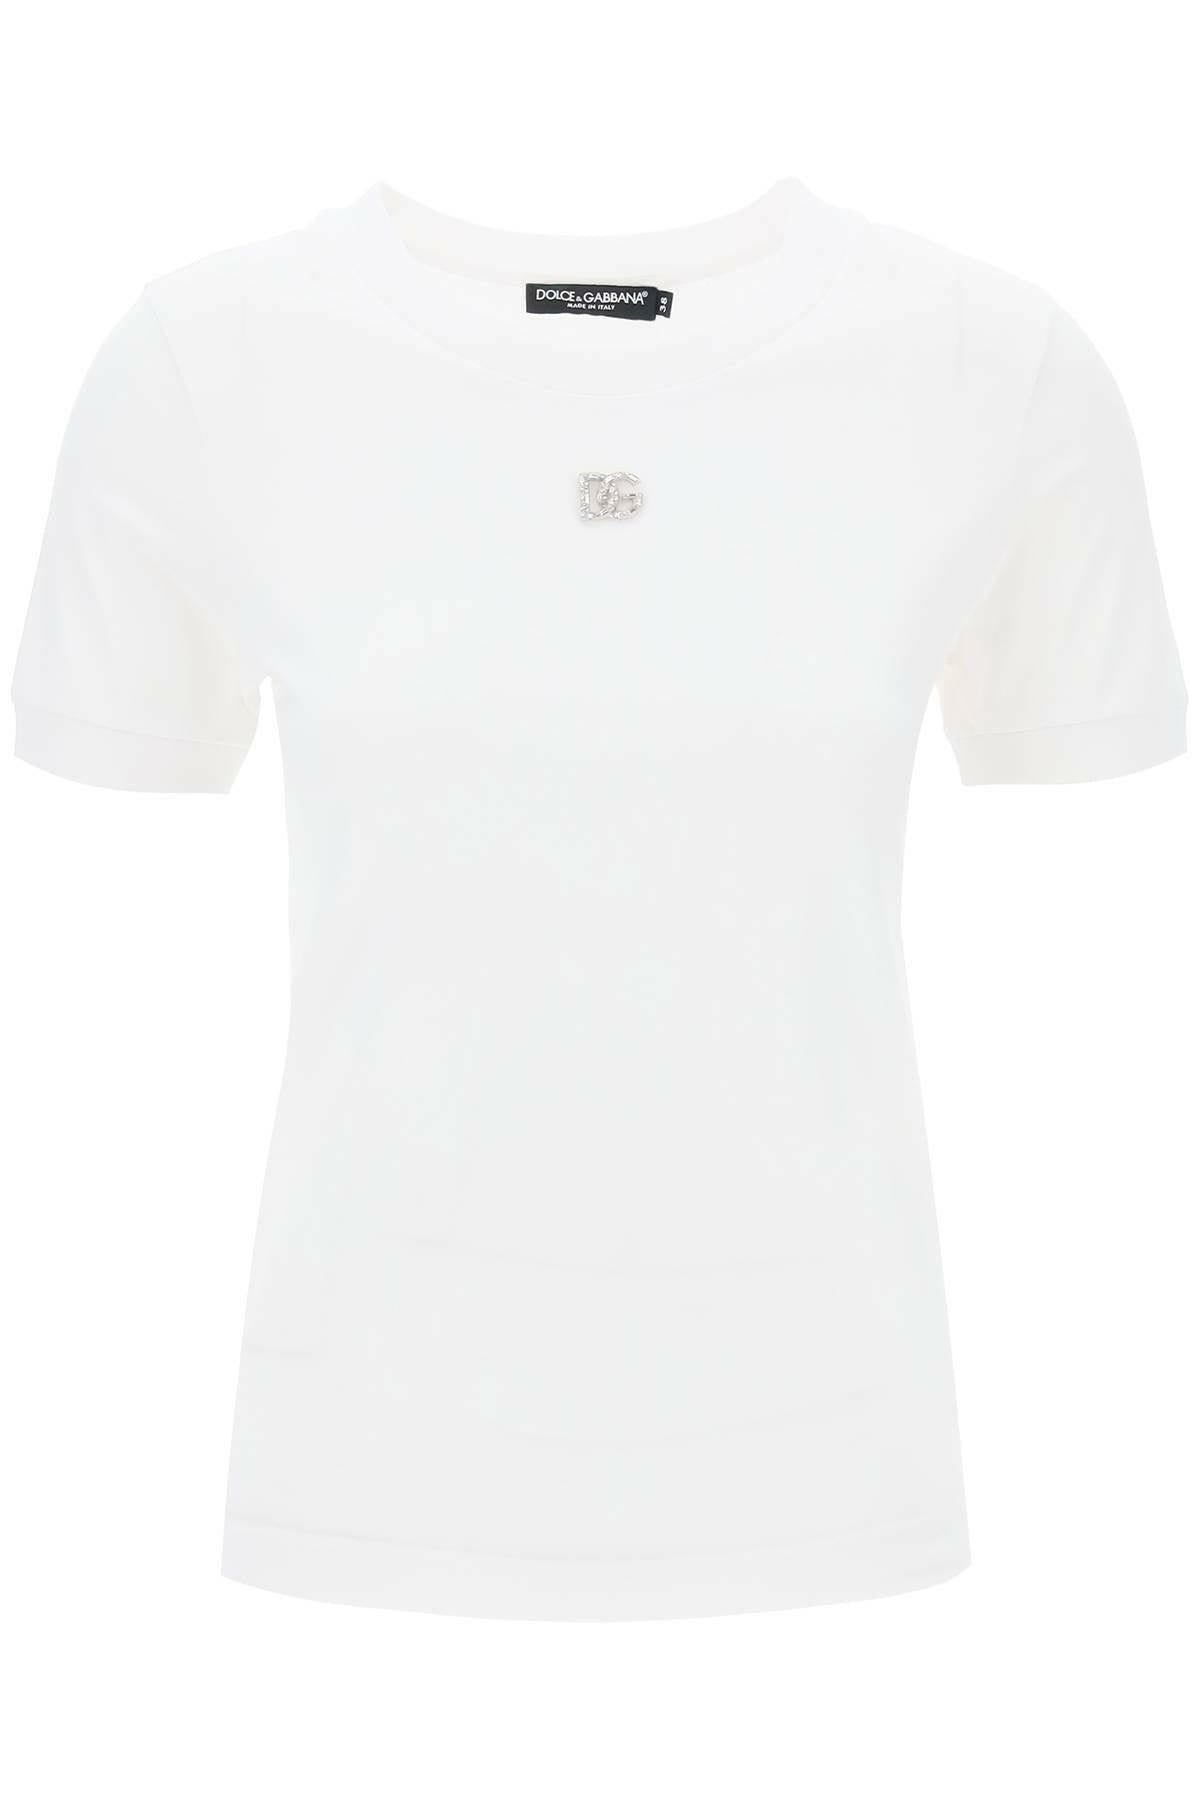 Dolce & Gabbana DG Crystal T-Shirt - JOHN JULIA